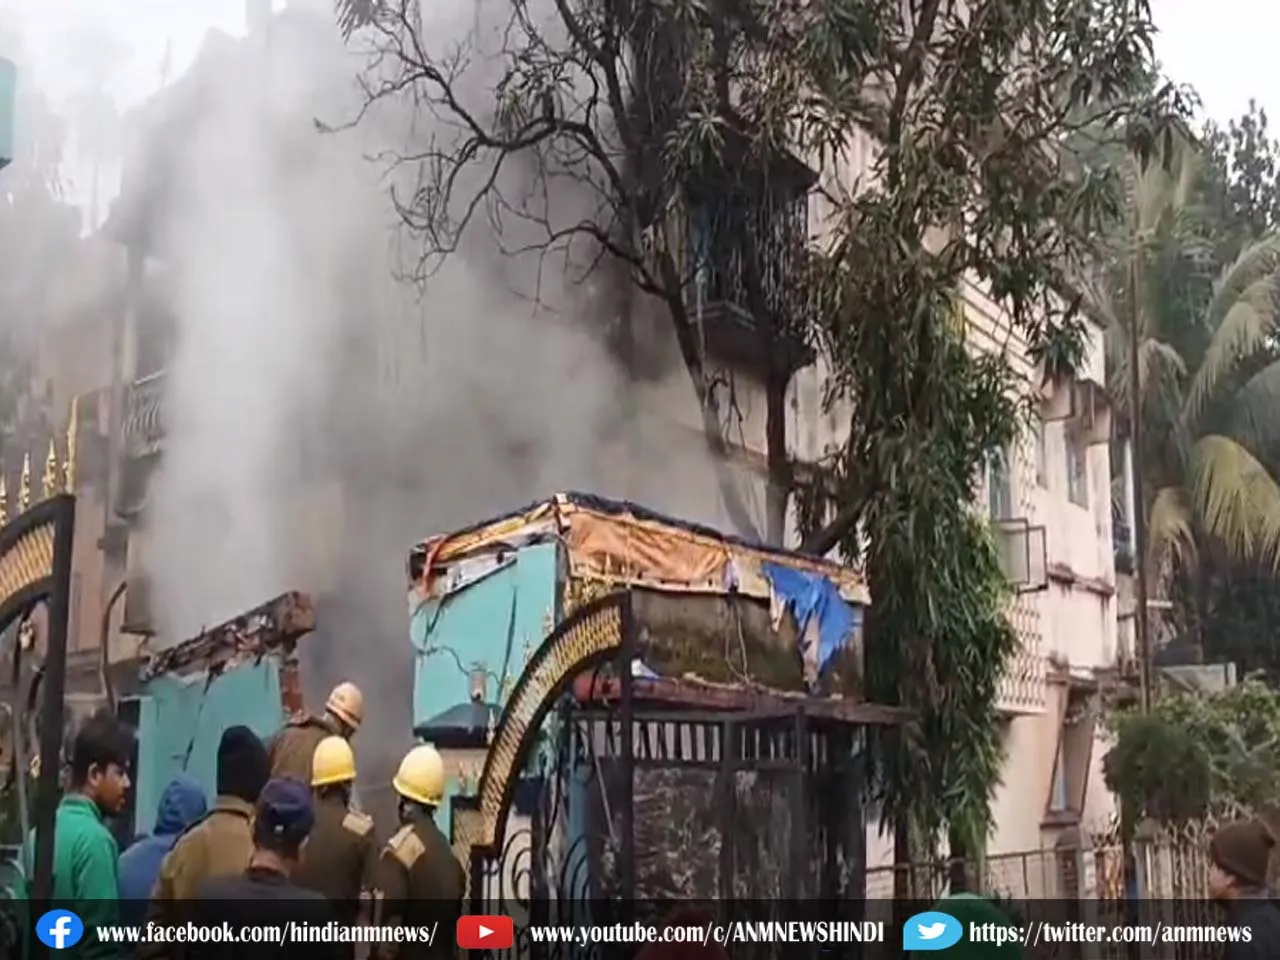 दुर्गापुर के सिटी सेंटर में लगी भीषण आग, कई लाख रुपये का नुकसान